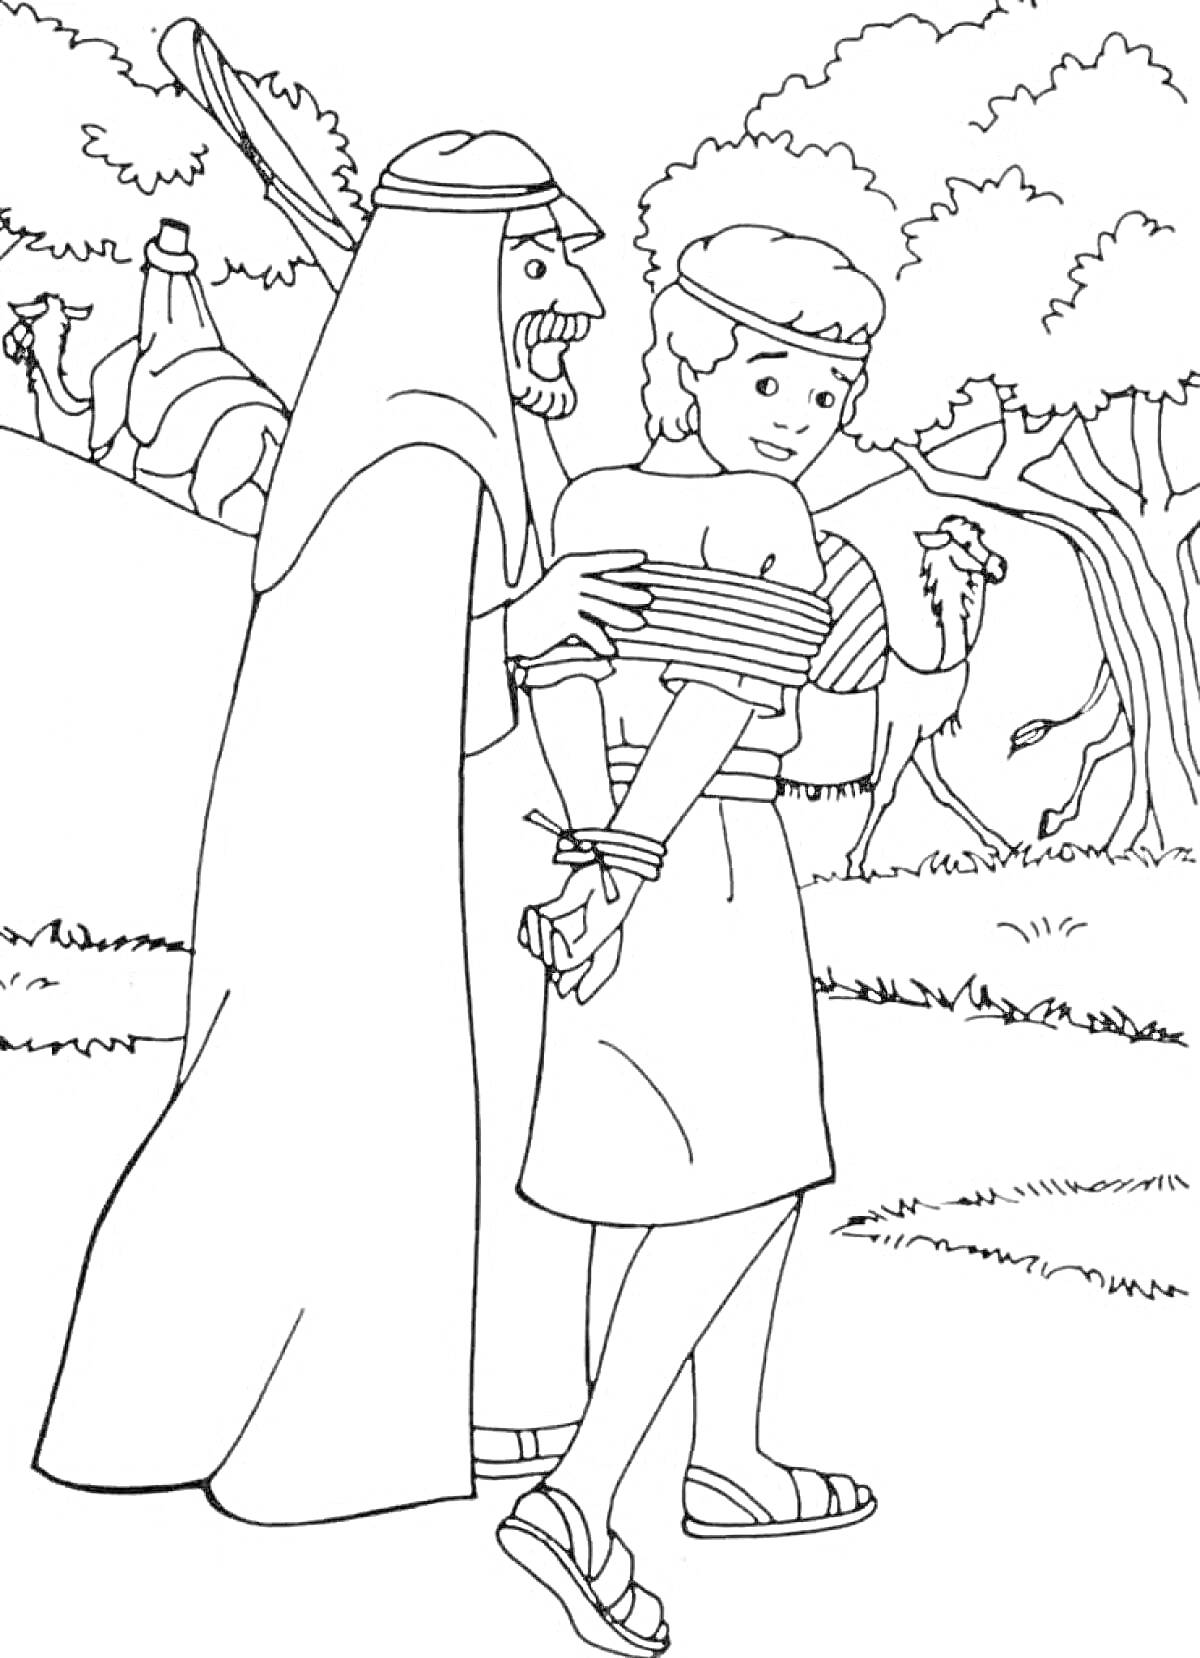 Раскраска Иосиф, связанный по рукам и ведомый мужчиной в грубой одежде, деревья и люди на заднем плане